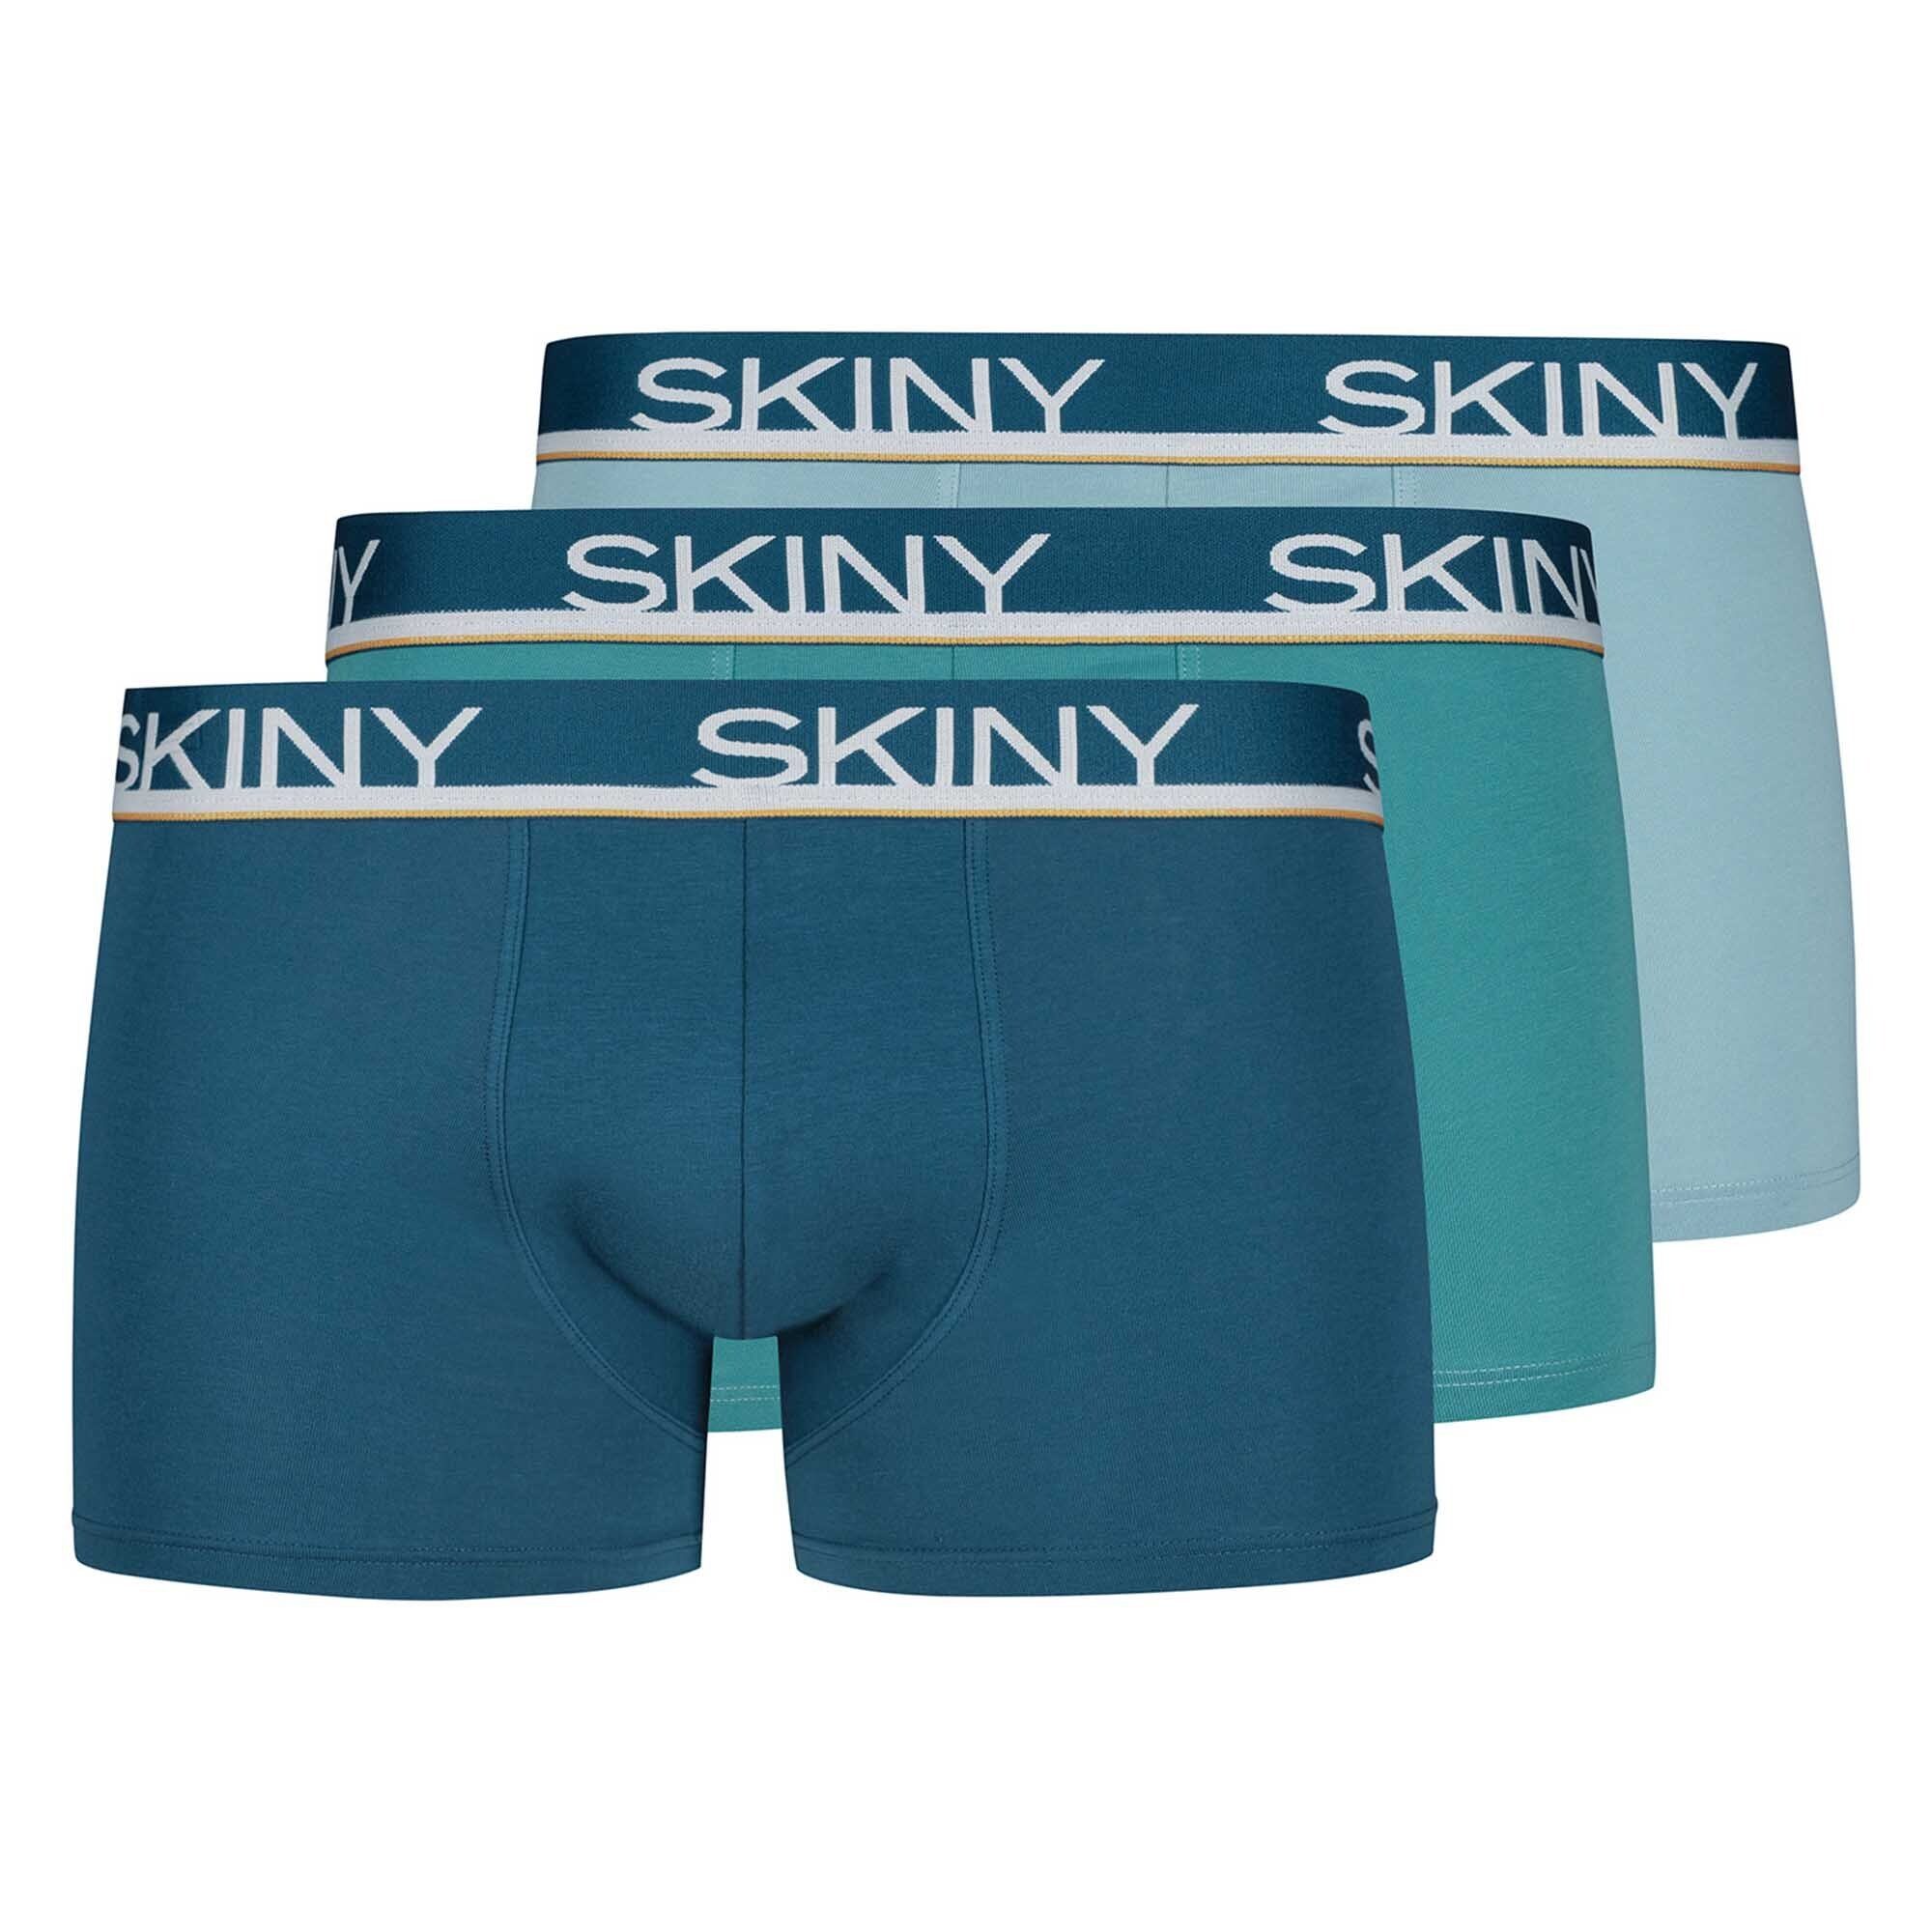 Skiny Boxer Herren Boxer Shorts 3er Pack - Trunks, Pants Blau/Türkis/Hellblau